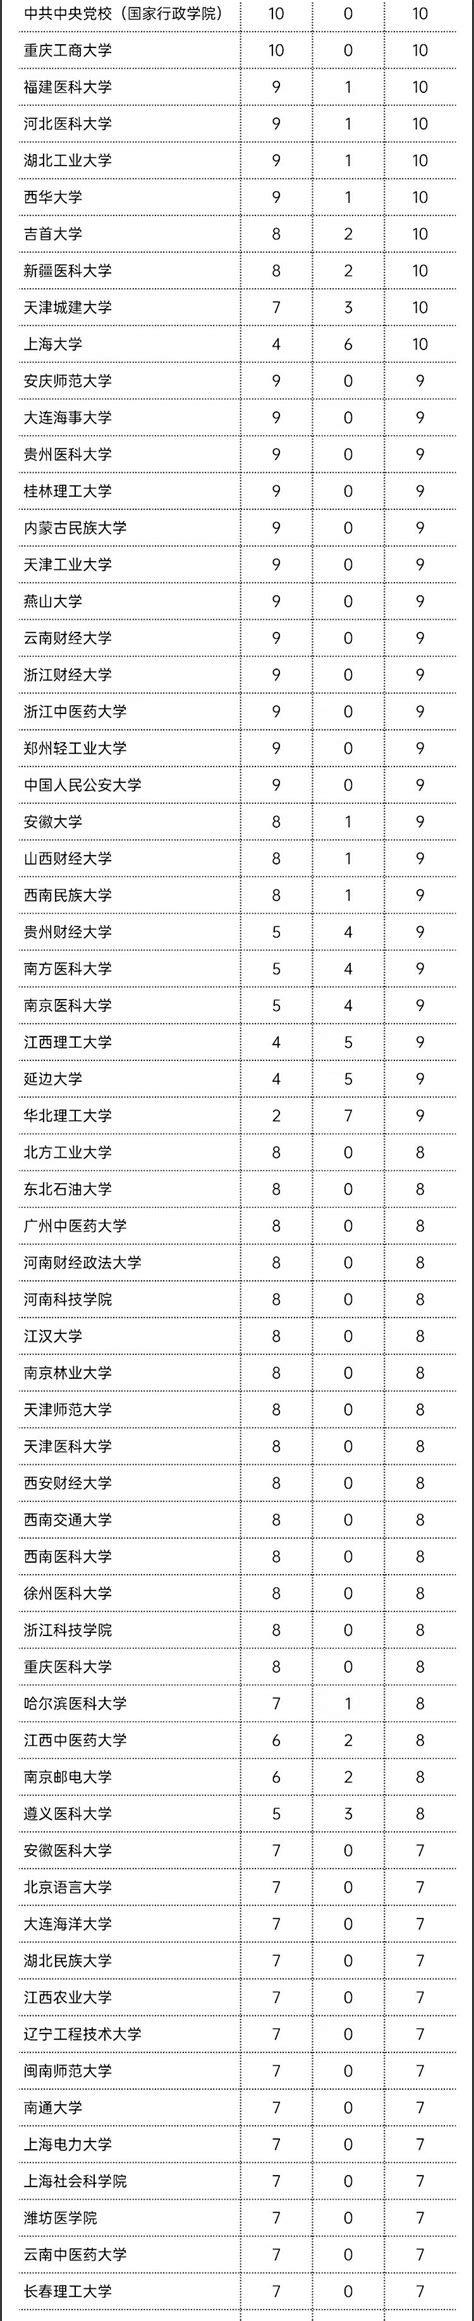 5466个！教育部公布高校自设交叉学科和二级学科名单 —中国教育在线